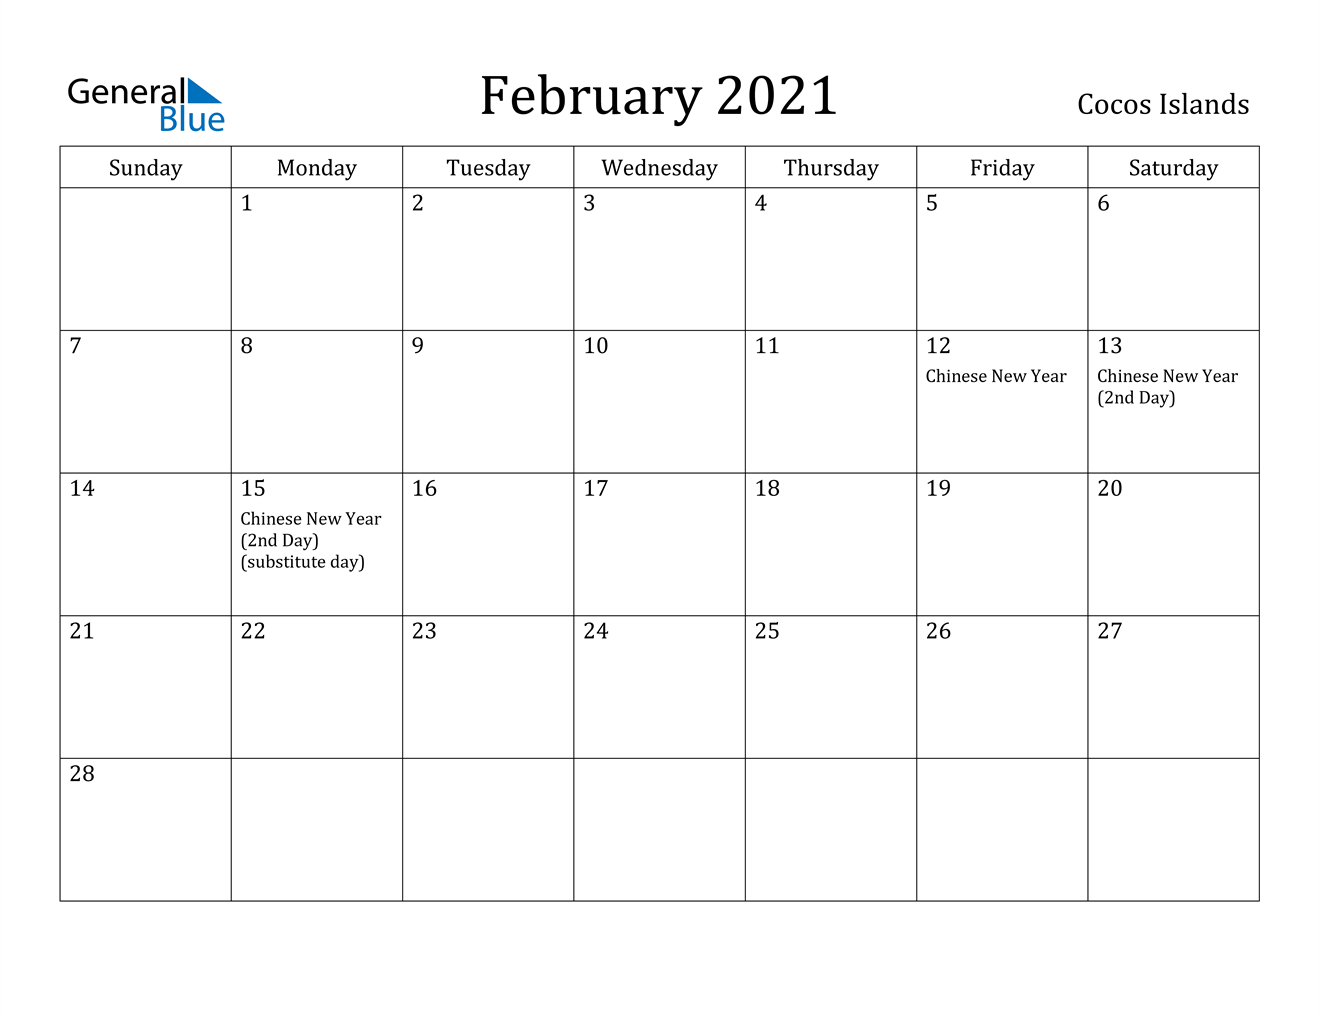 February 2021 Calendar Cocos Islands